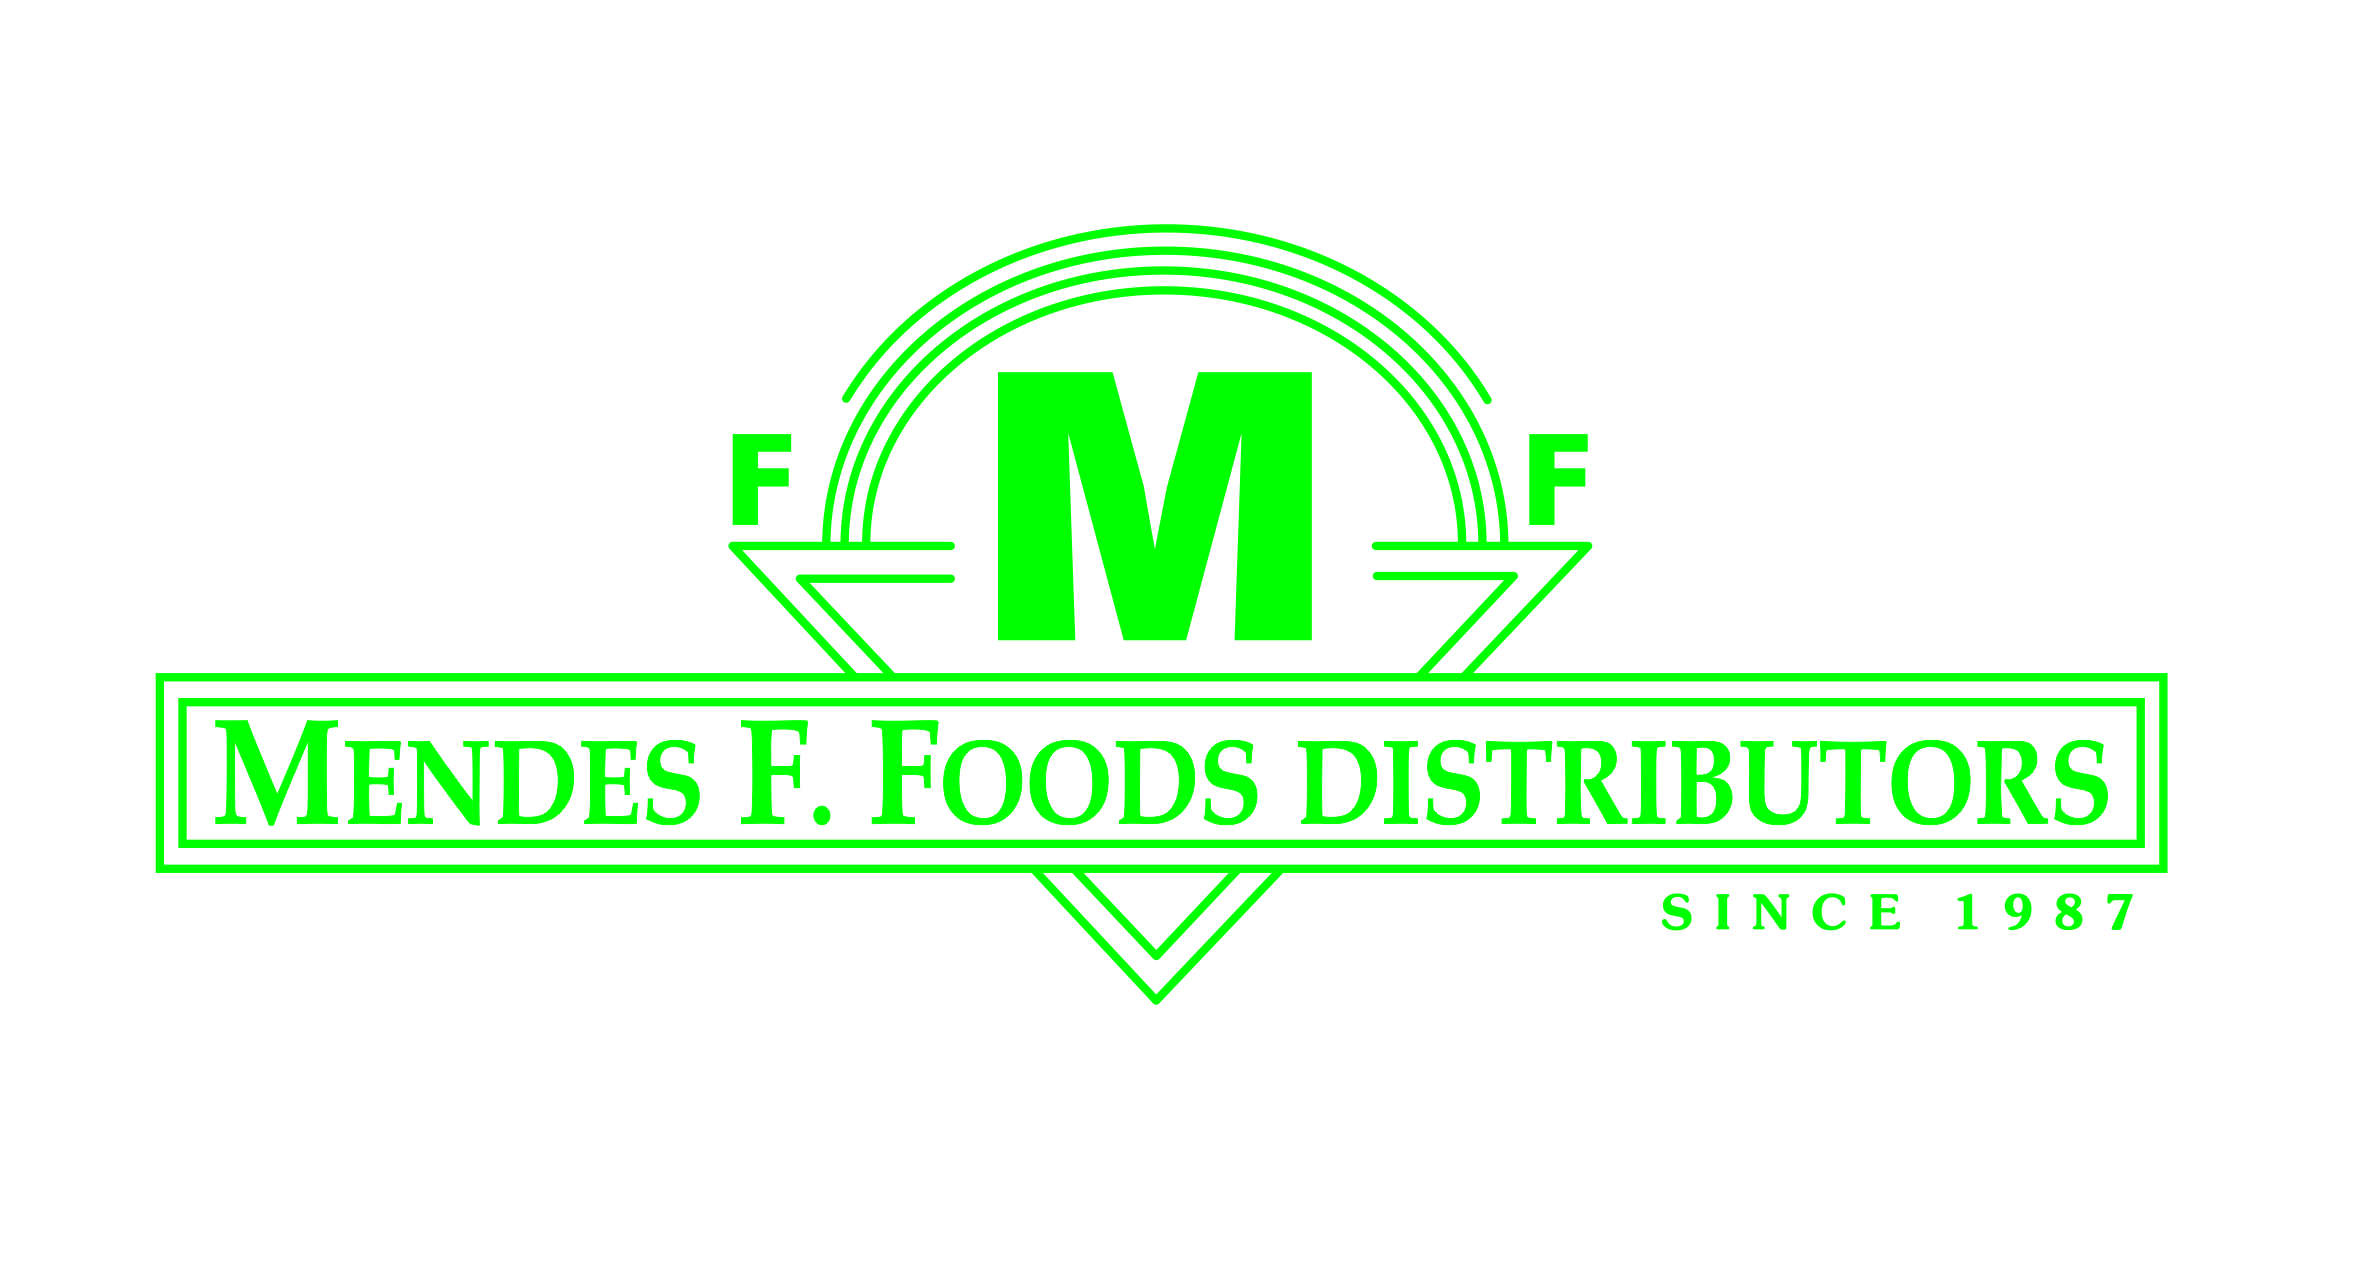 Mendes Fine Foods